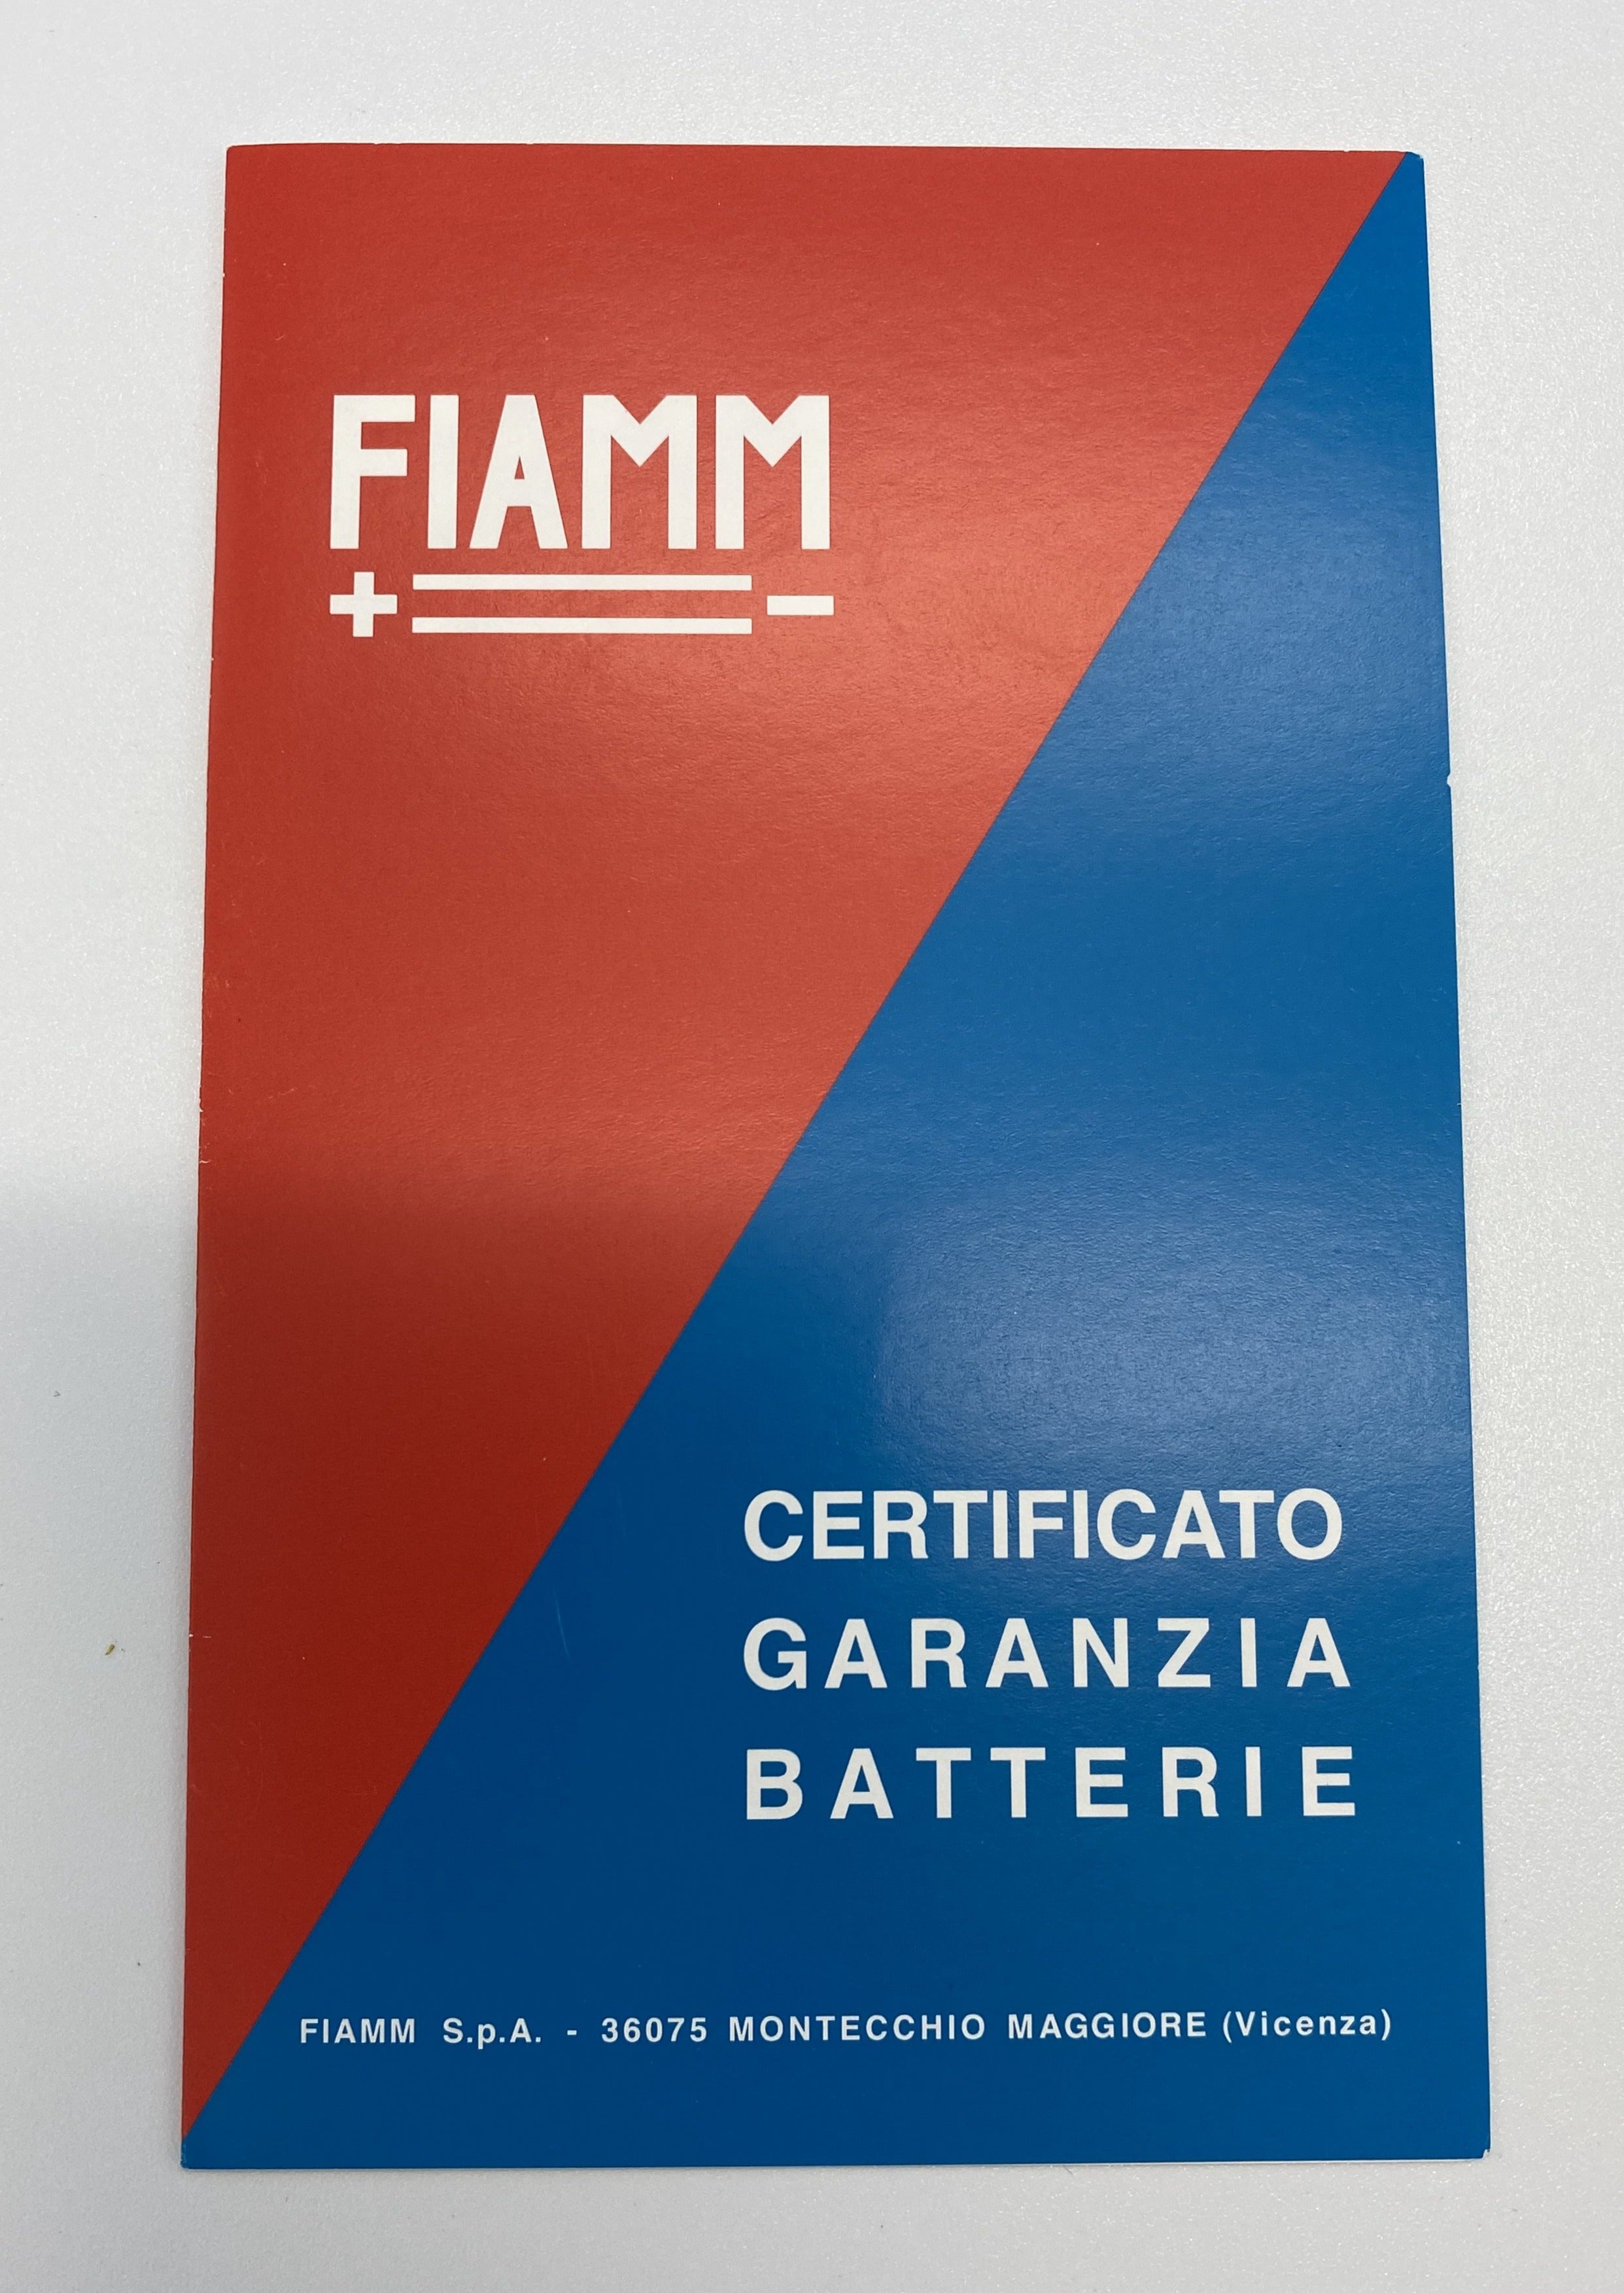 FIAMM Battery Warranty Booklet - Rare